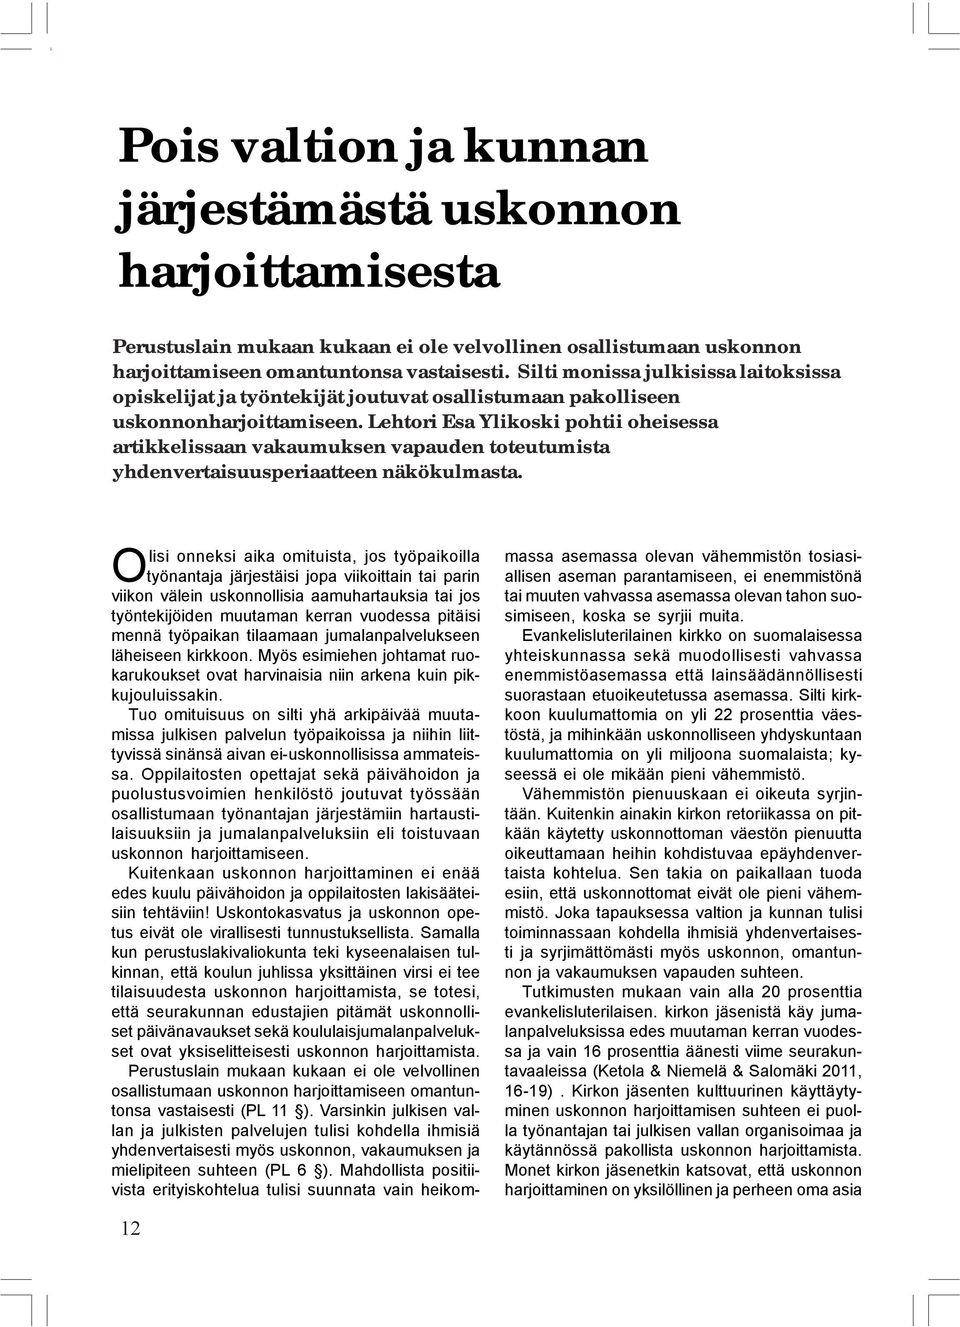 Lehtori Esa Ylikoski pohtii oheisessa artikkelissaan vakaumuksen vapauden toteutumista yhdenvertaisuusperiaatteen näkökulmasta.